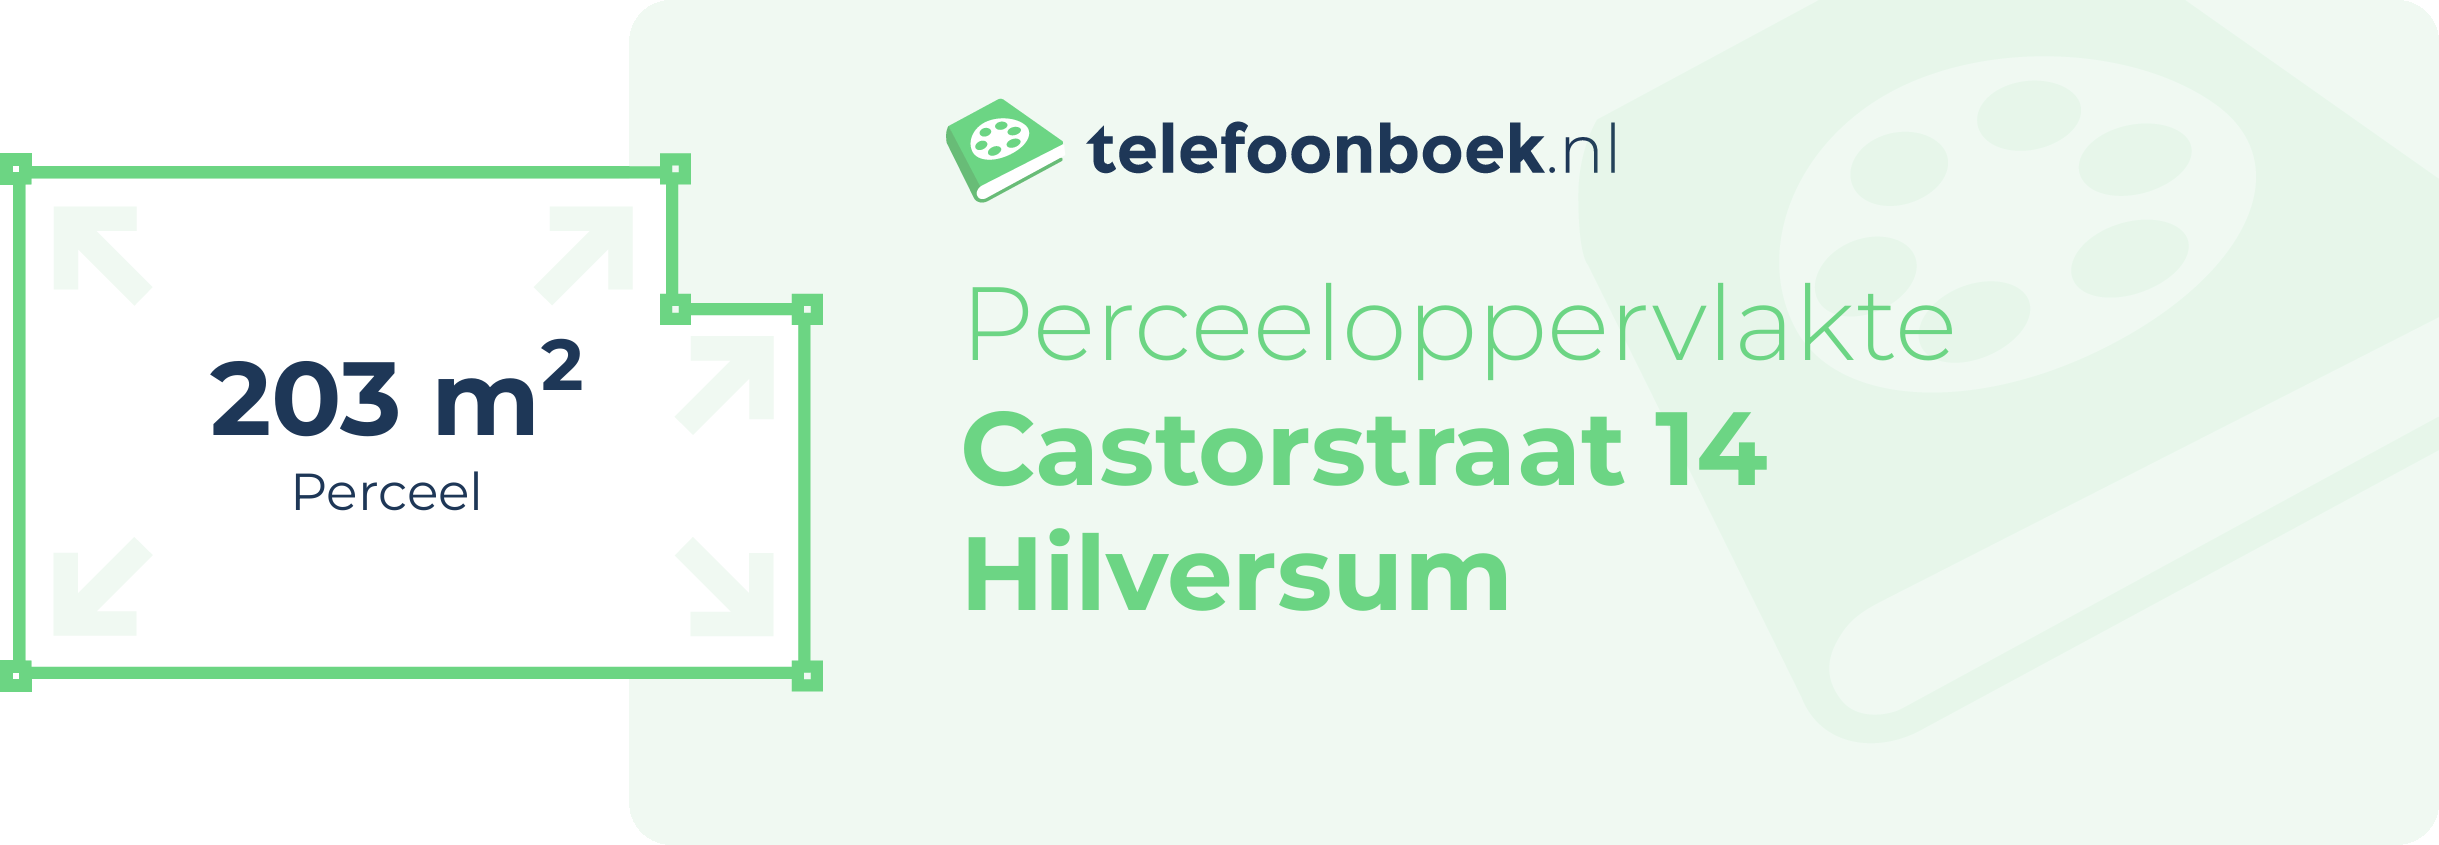 Perceeloppervlakte Castorstraat 14 Hilversum